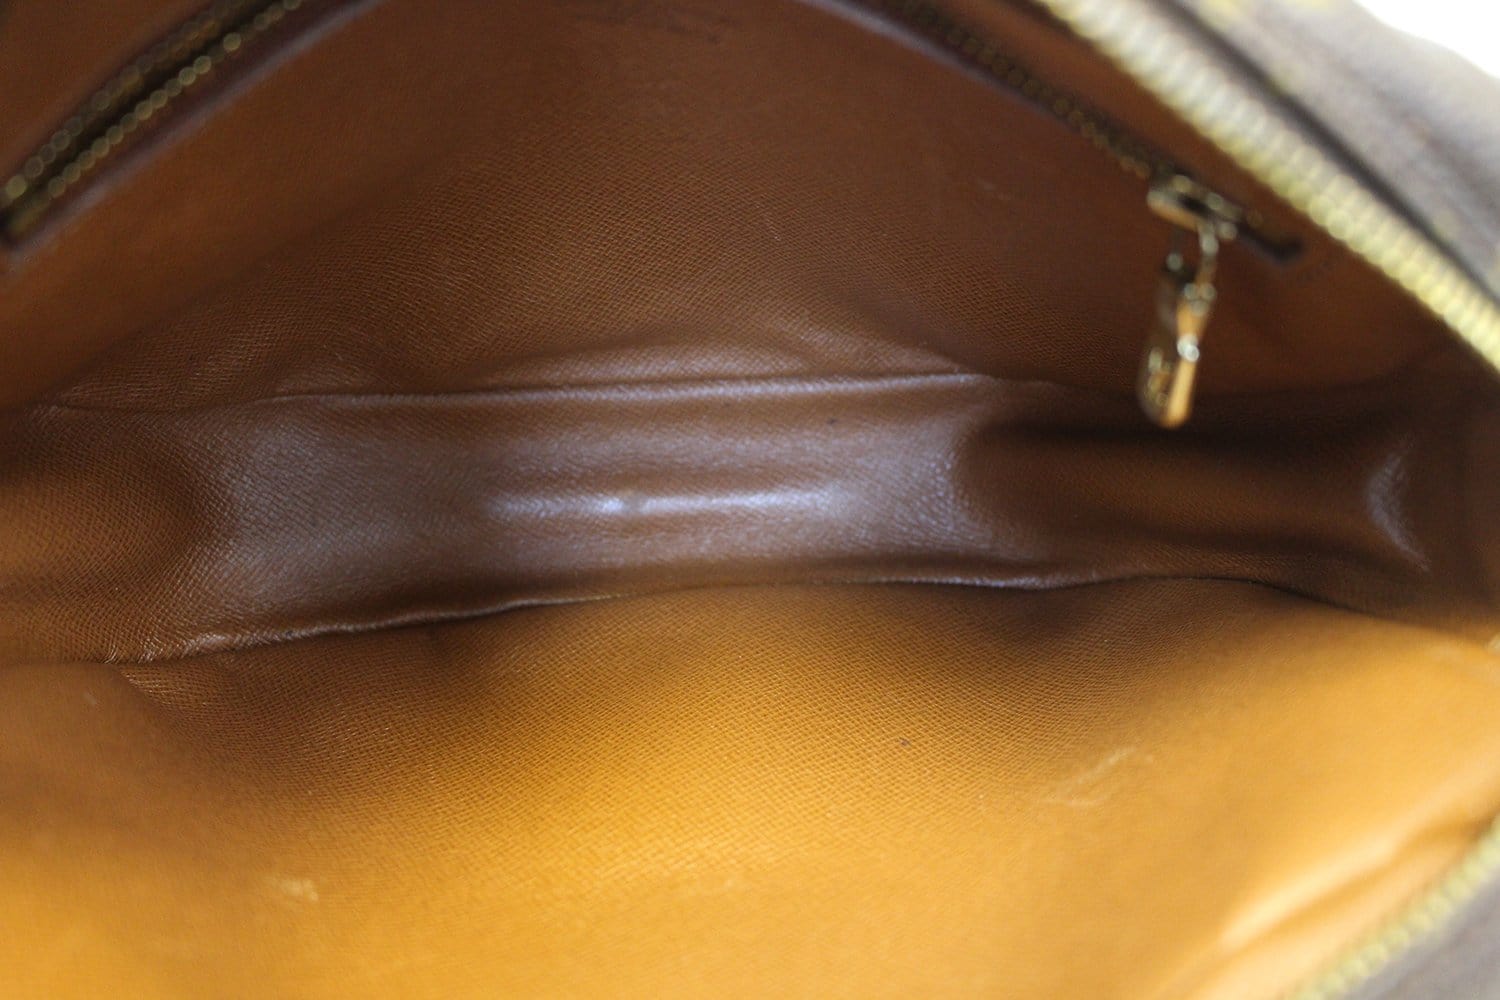 LOUIS VUITTON Jeune Fille PM Shoulder Bag Monogram Leather Brown M51227  38GA459